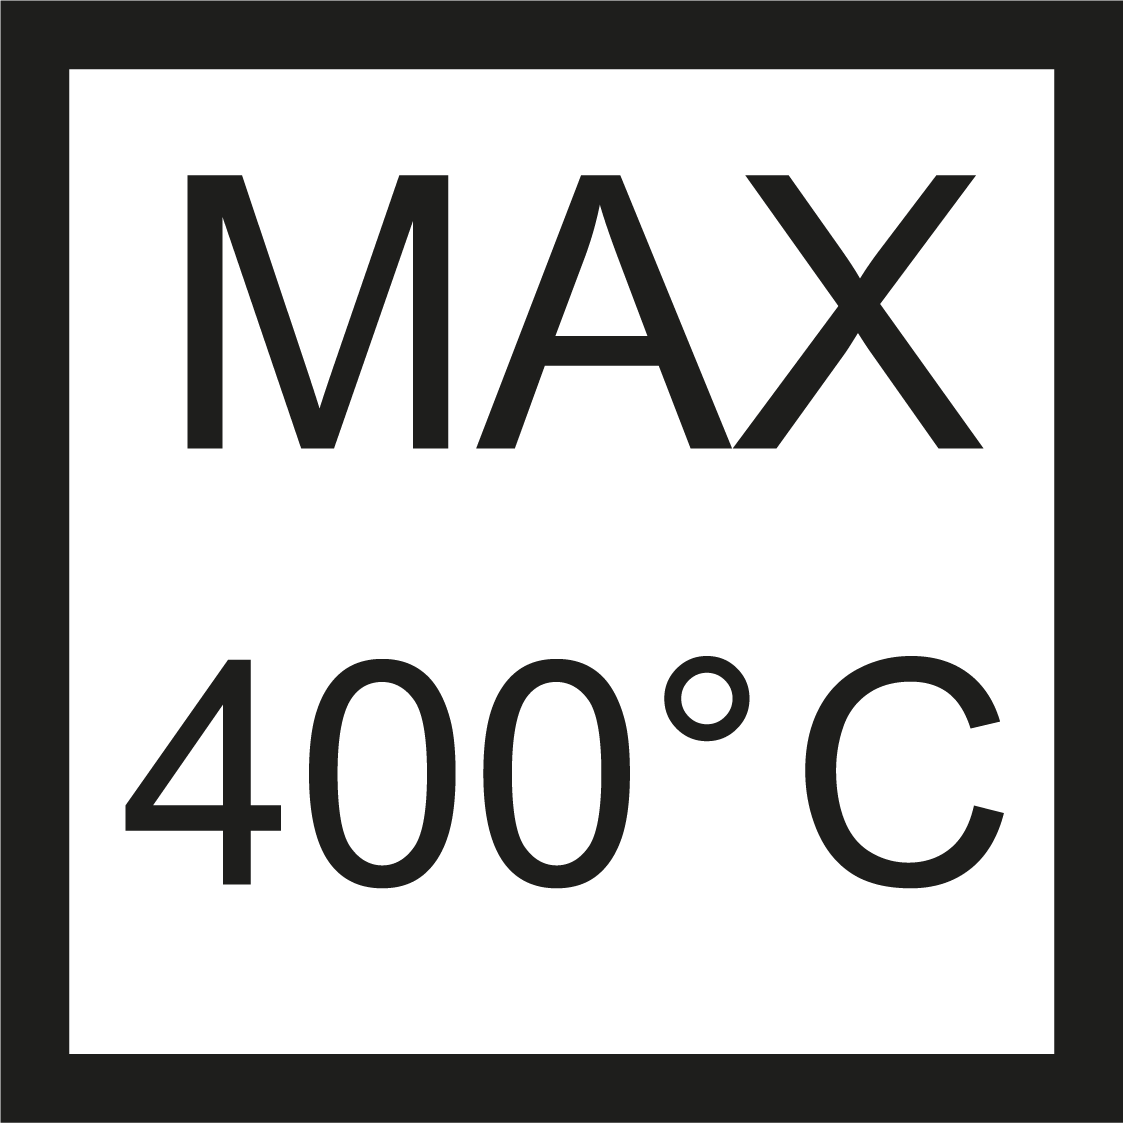 Max 400° C